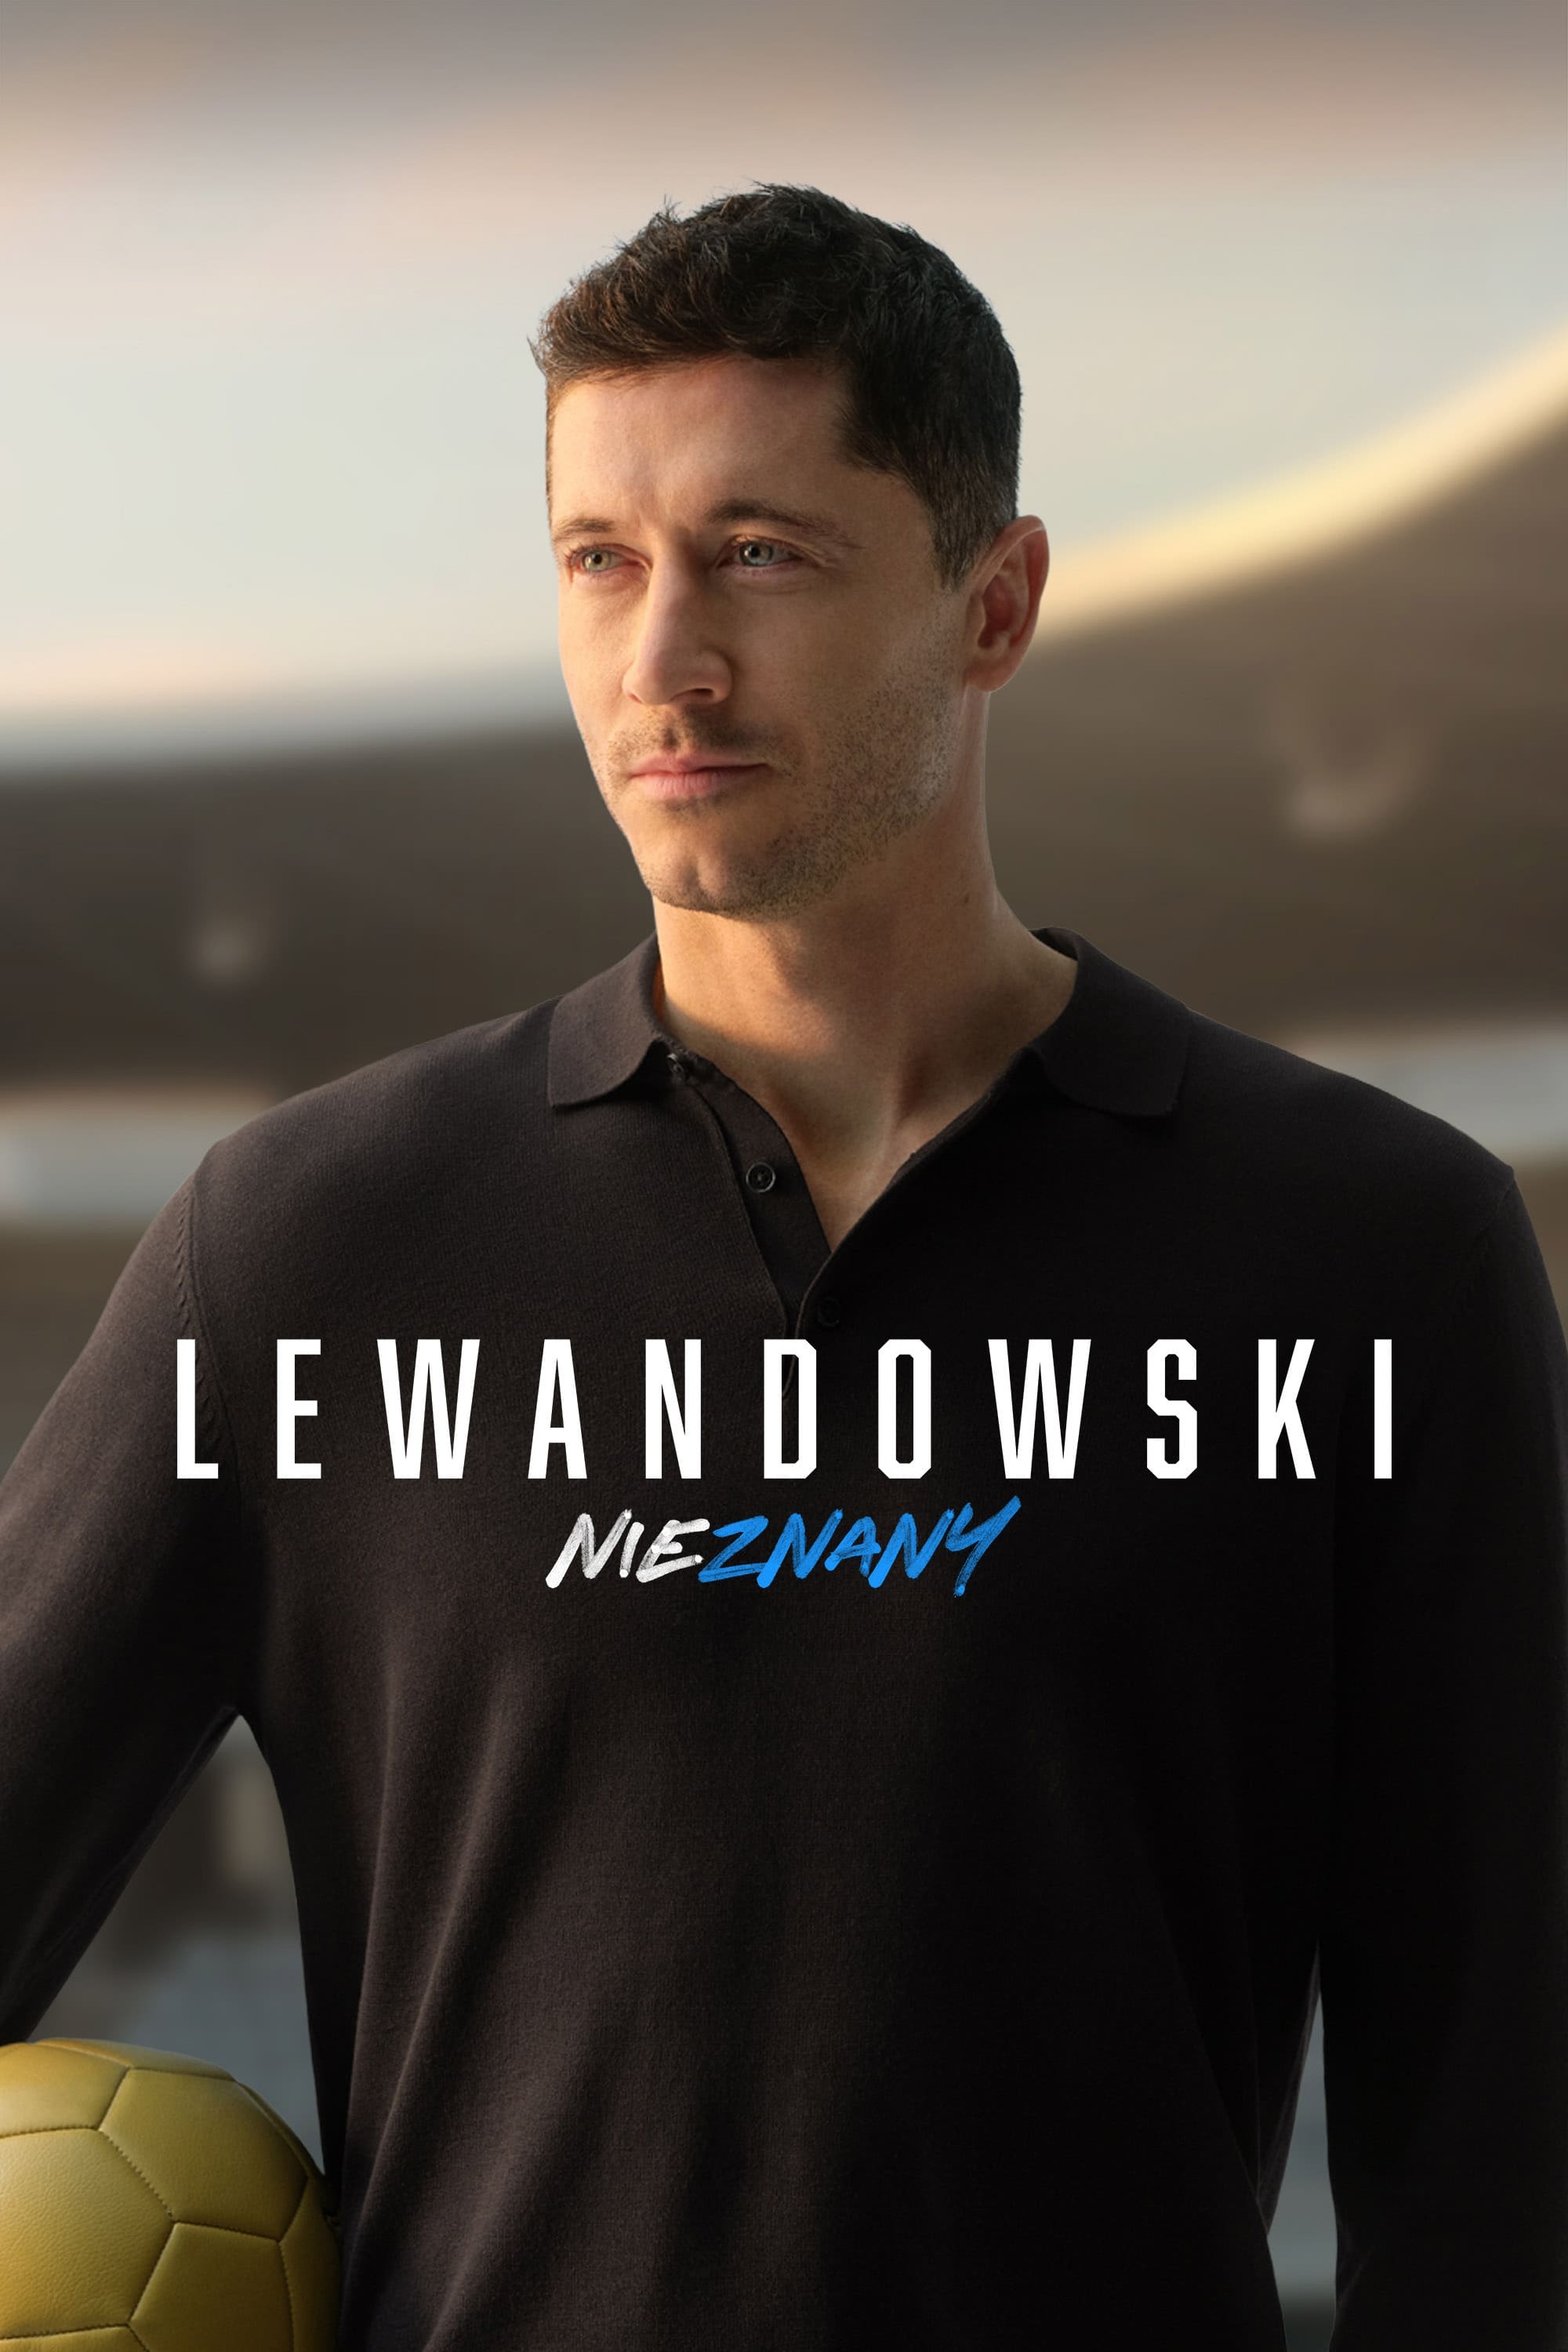 Lewandowski: Lo desconocido